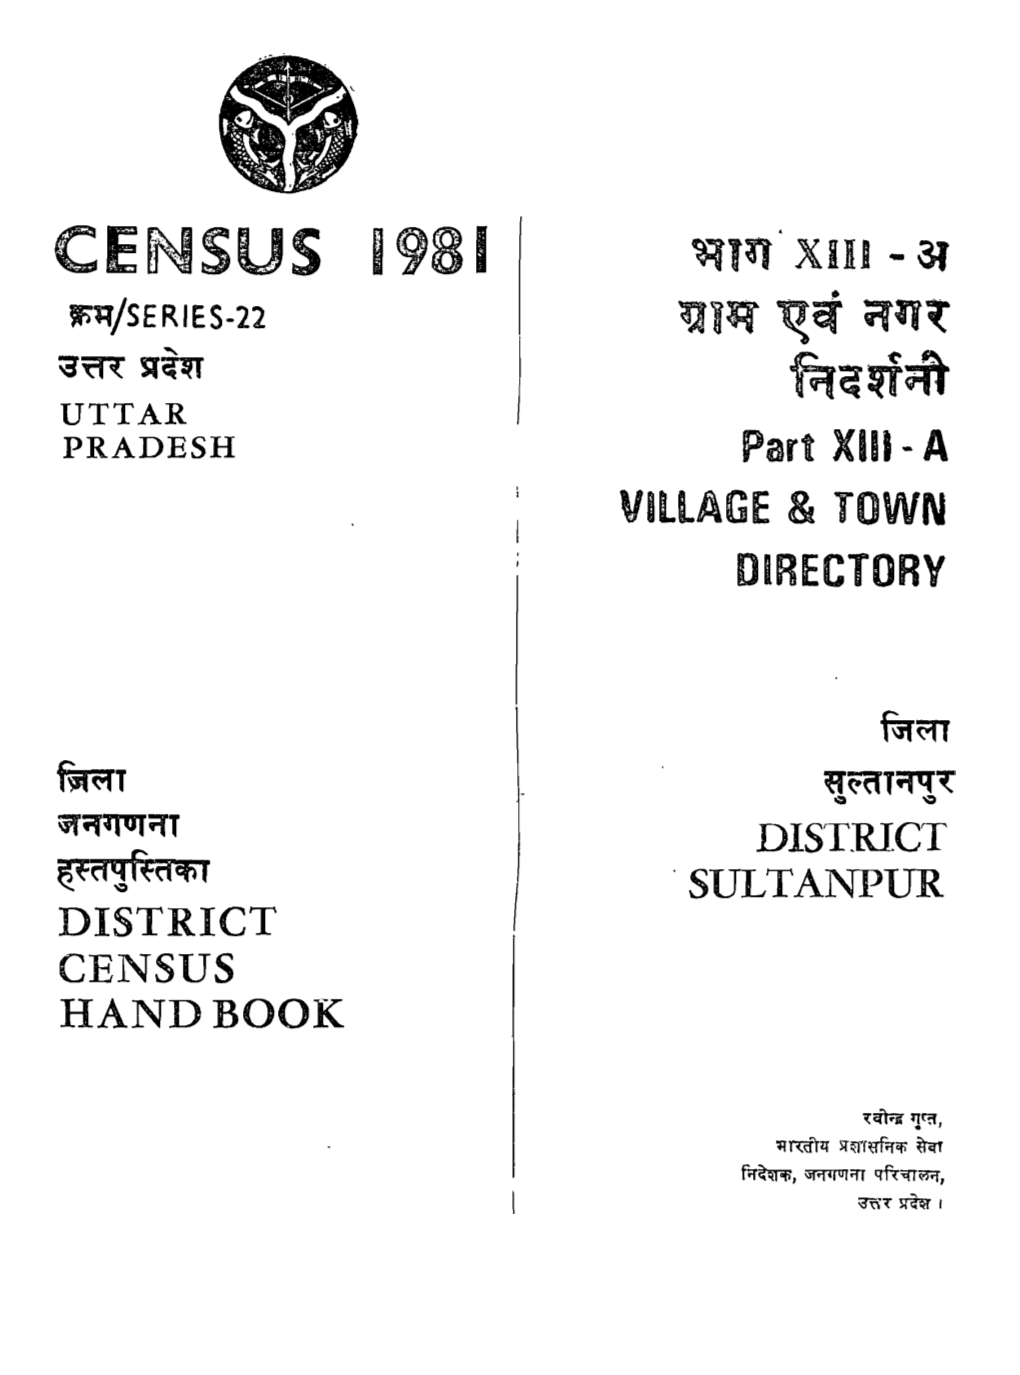 District Census Handbook, Sultanpur, Part XIII-A, Series-22, Uttar Pradesh